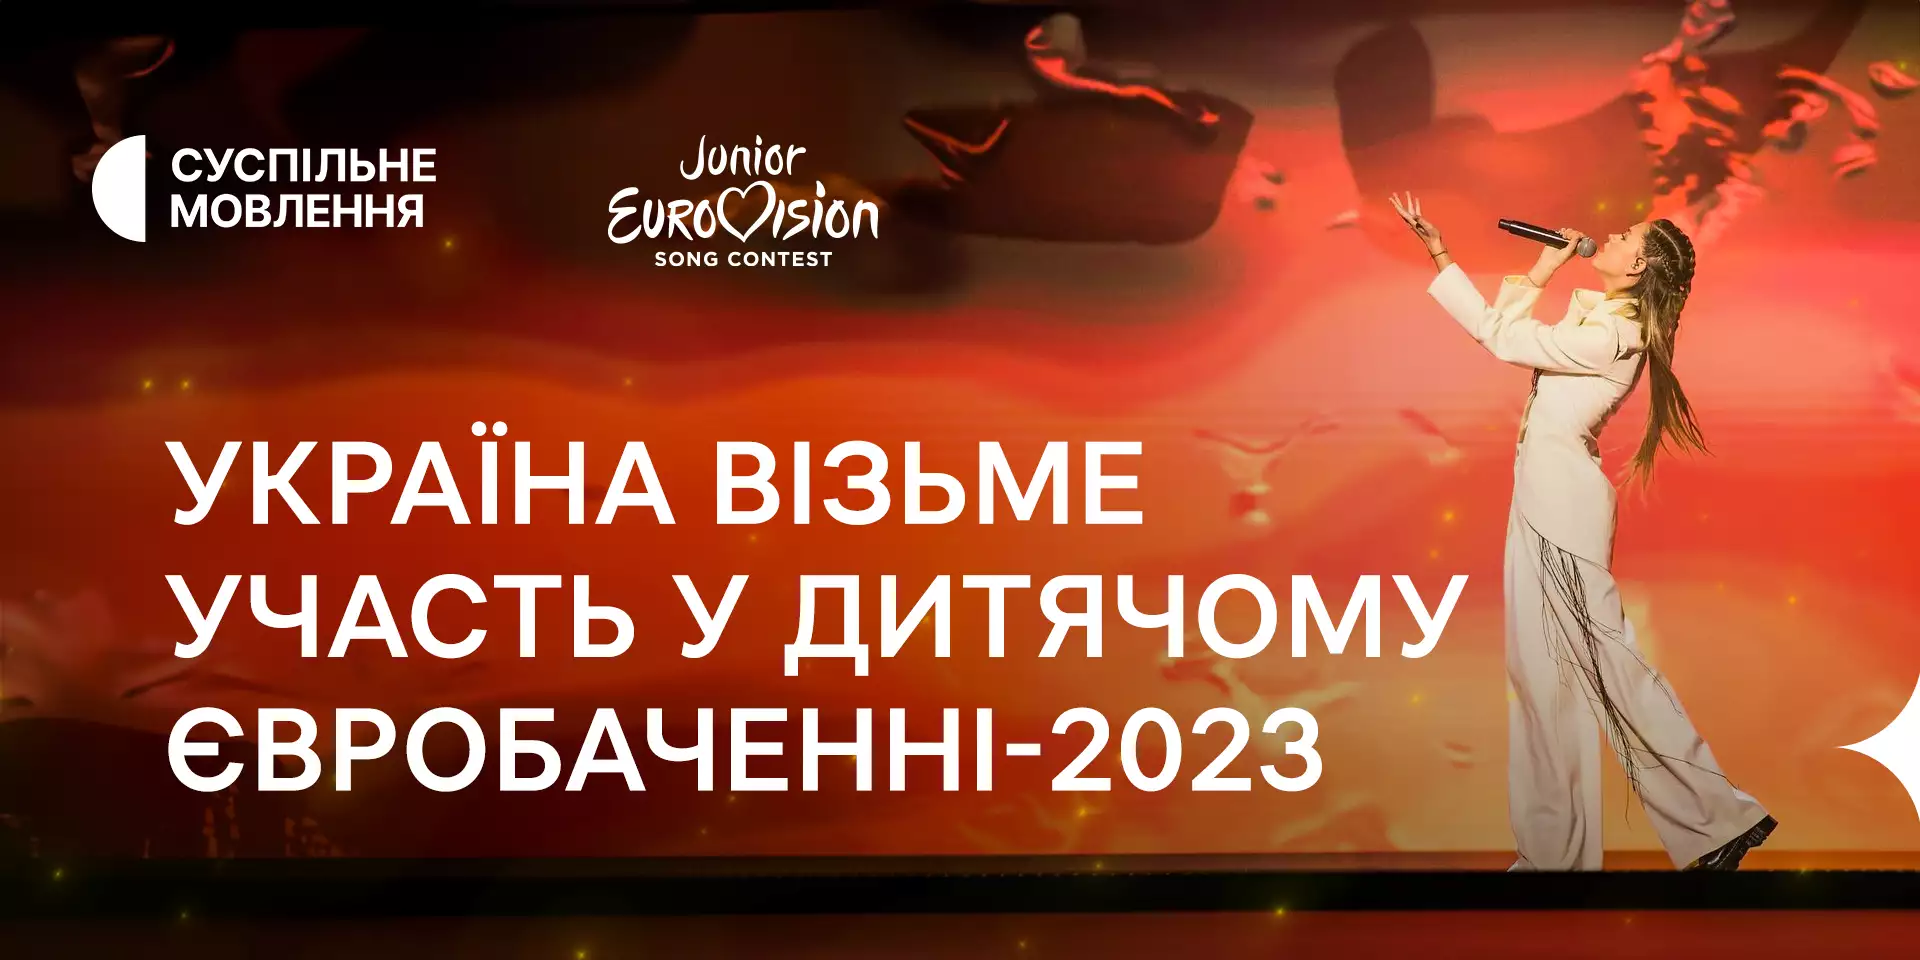 «Дитяче Євробачення-2023»: приймання заявок на участь у Національному відборі невдовзі розпочнеться за новими правилами